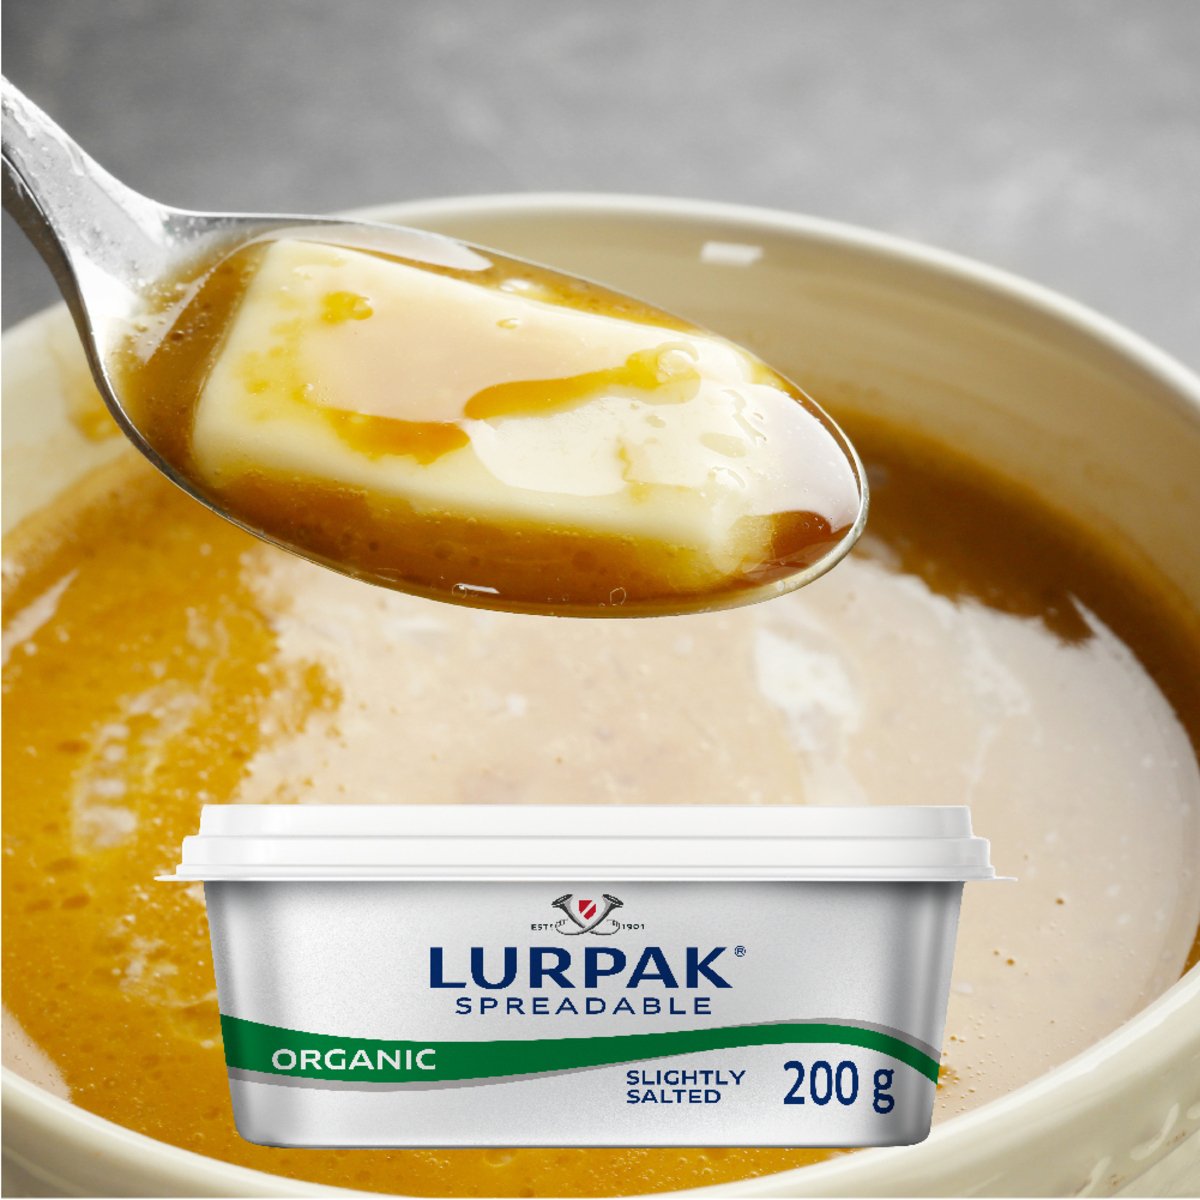 Lurpak Organic Butter Spreadable Slightly Salted 200 g